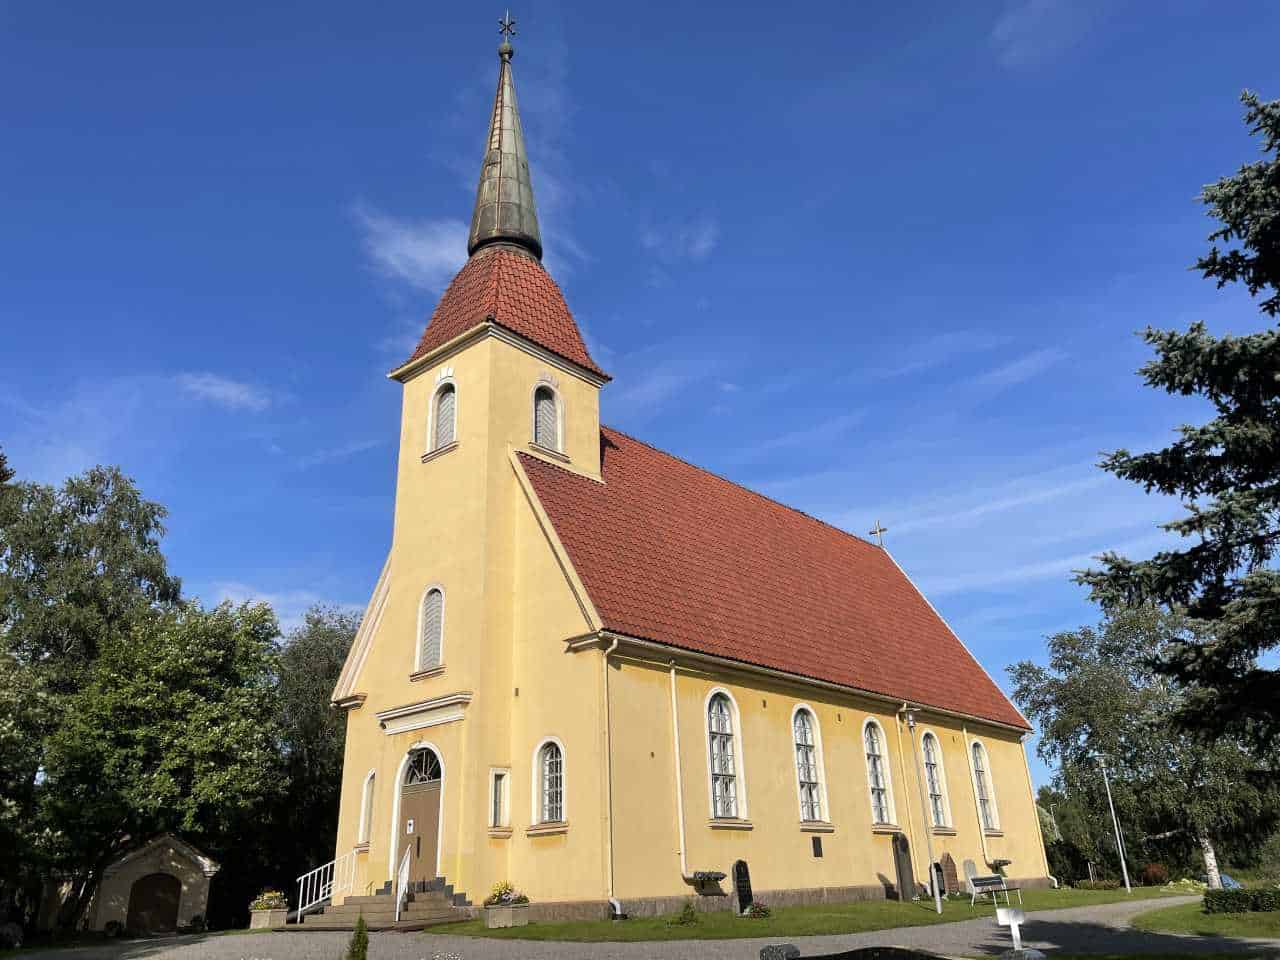 church of saloinen